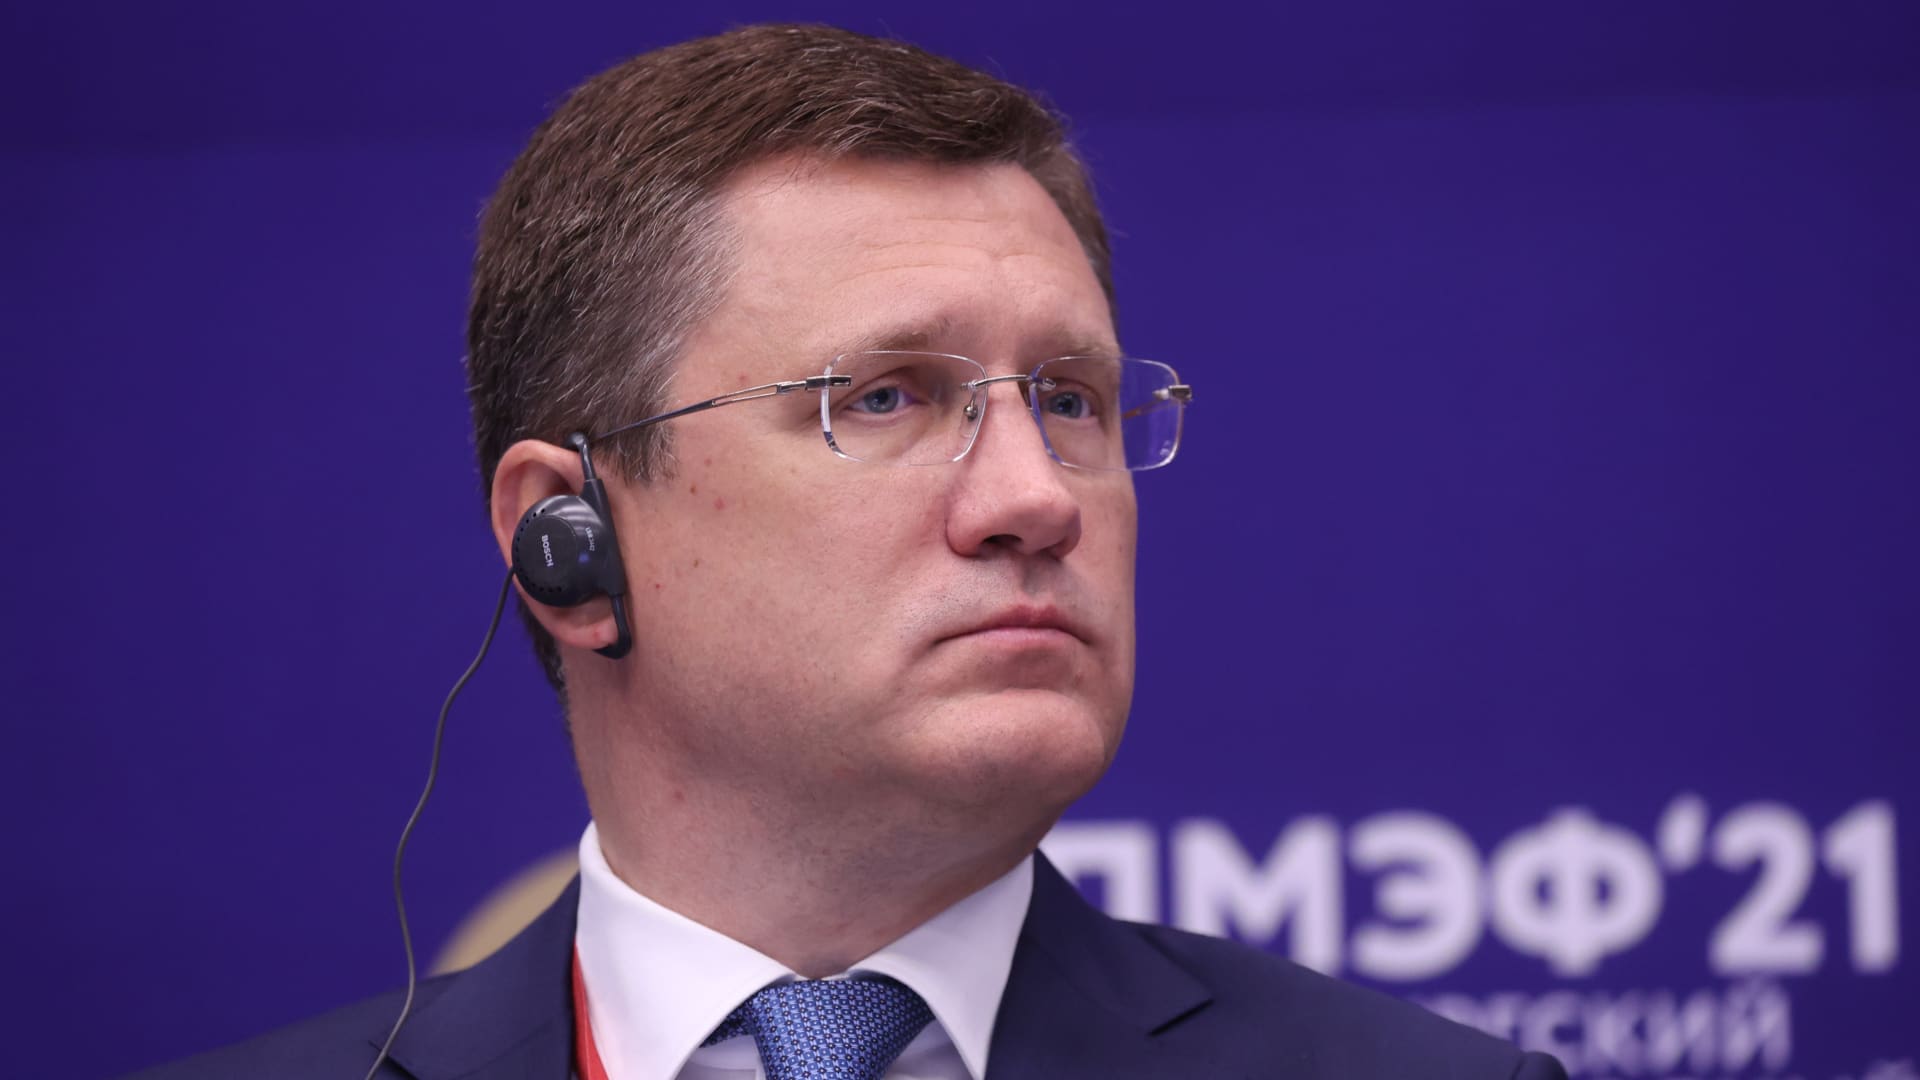 Александр Новак, министр энергетики России, был отстранен от работы во время второго дня заседания Петербургского международного экономического форума (ПМЭФ) в Санкт-Петербурге, Россия, в четверг, 3 июня 2021 г.